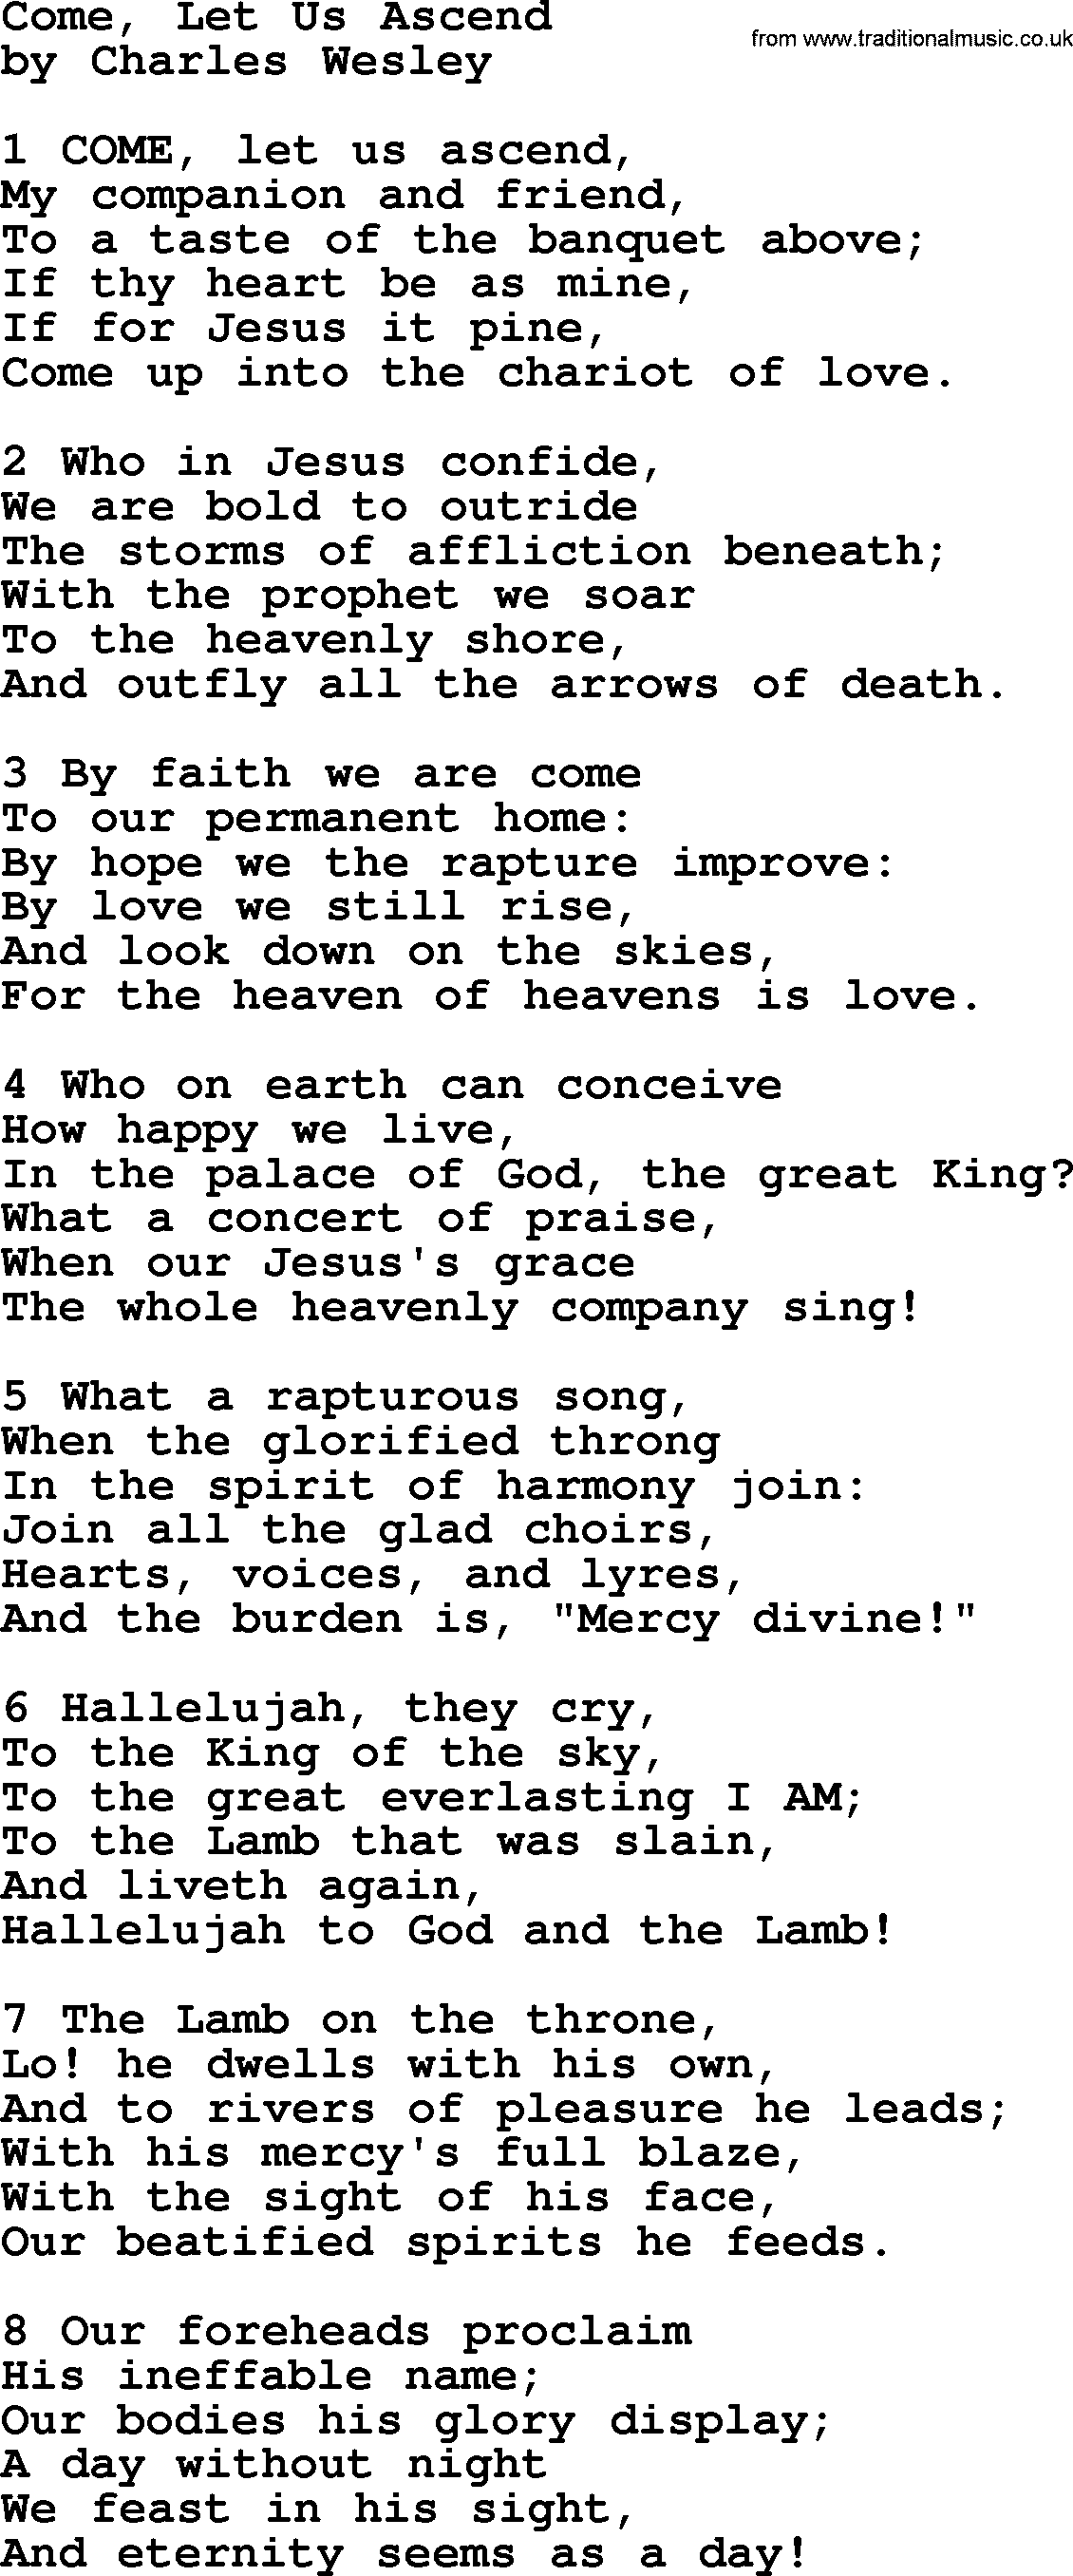 Charles Wesley hymn: Come, Let Us Ascend, lyrics